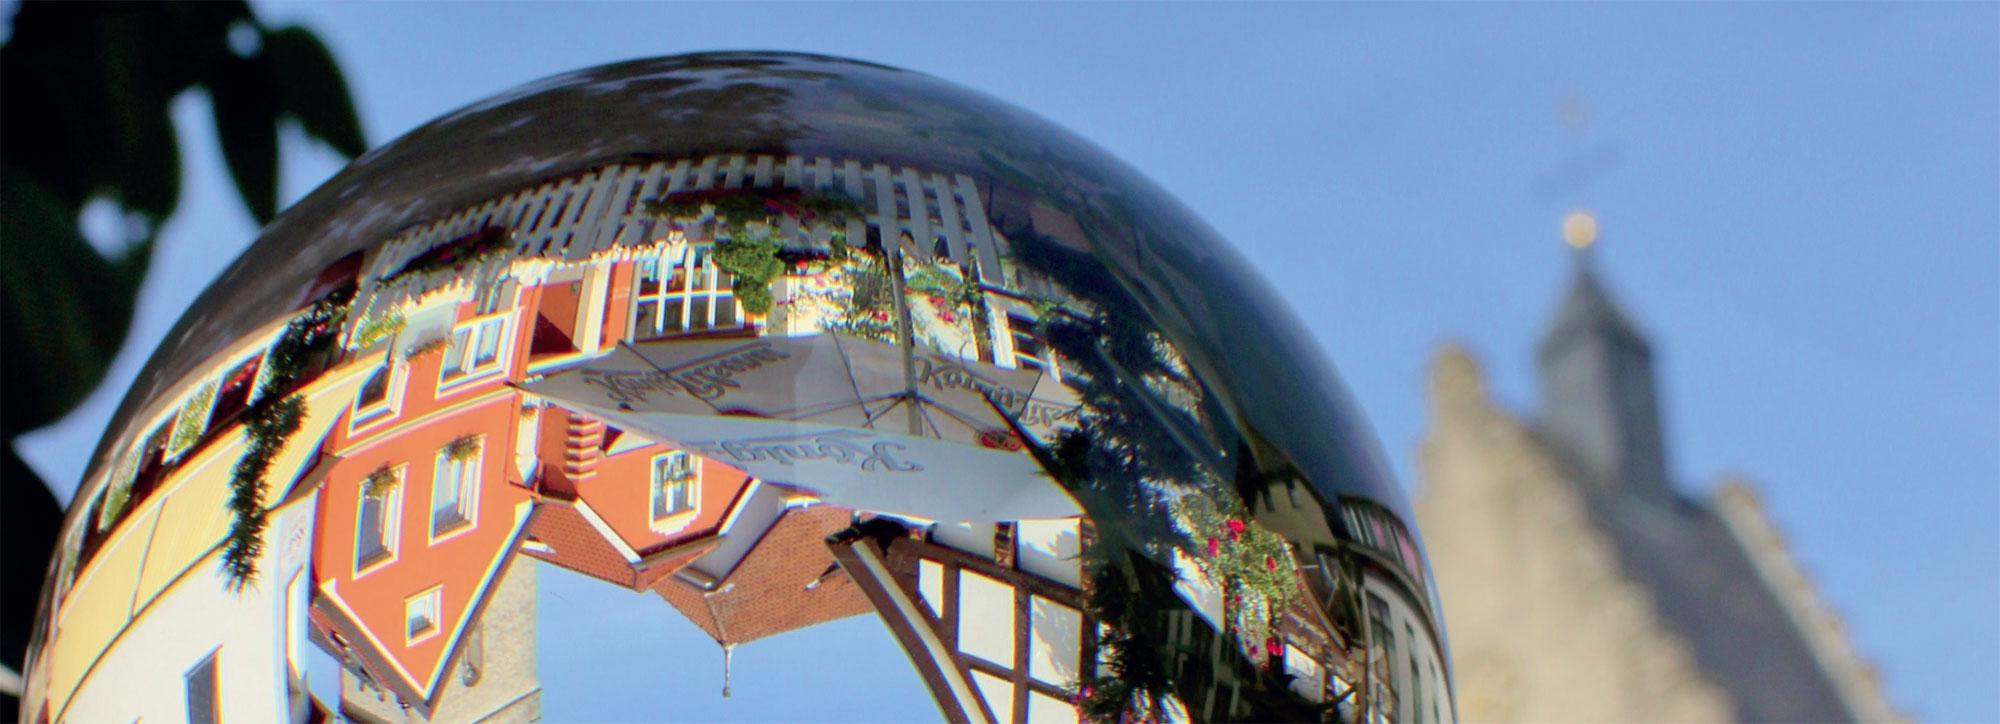 Häuser auf einer Glaskugel als Spiegelbild zu sehen